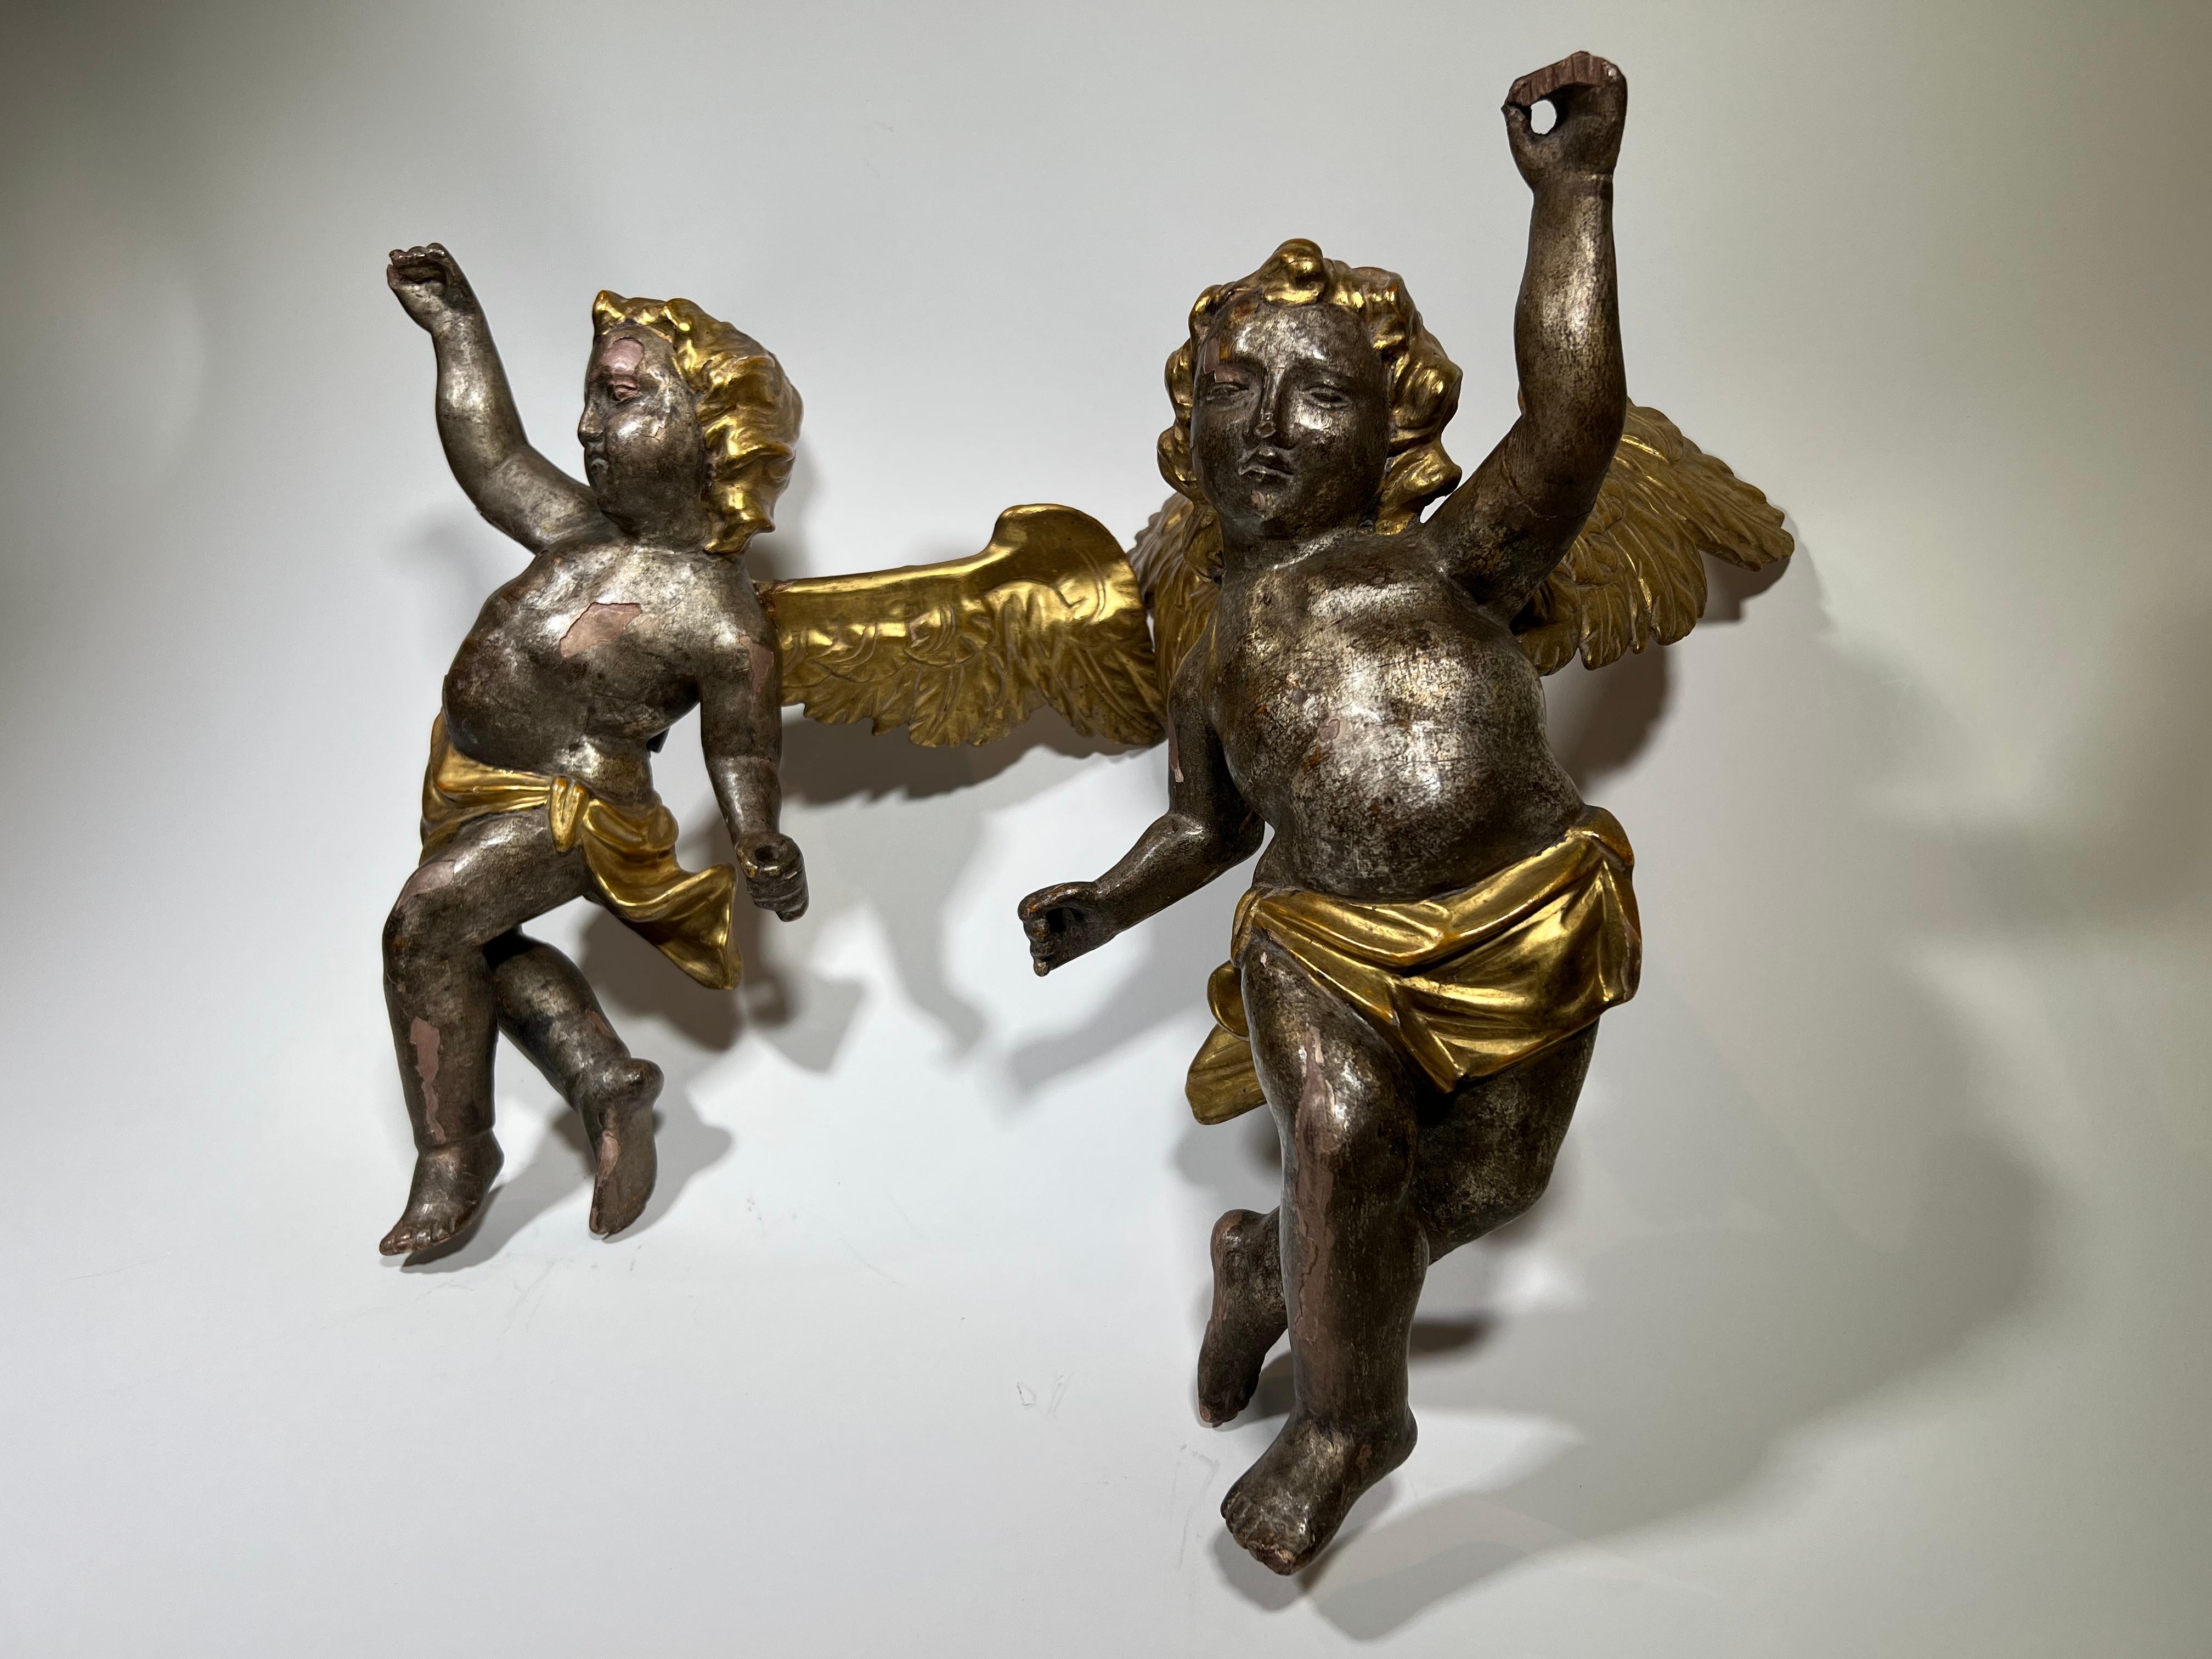 Ravissante paire de puttini ou chérubins italiens du XVIIIe siècle en bois doré. Merveilleusement sculpté avec des traits délicats - conférant à cette paire élégance et charme.